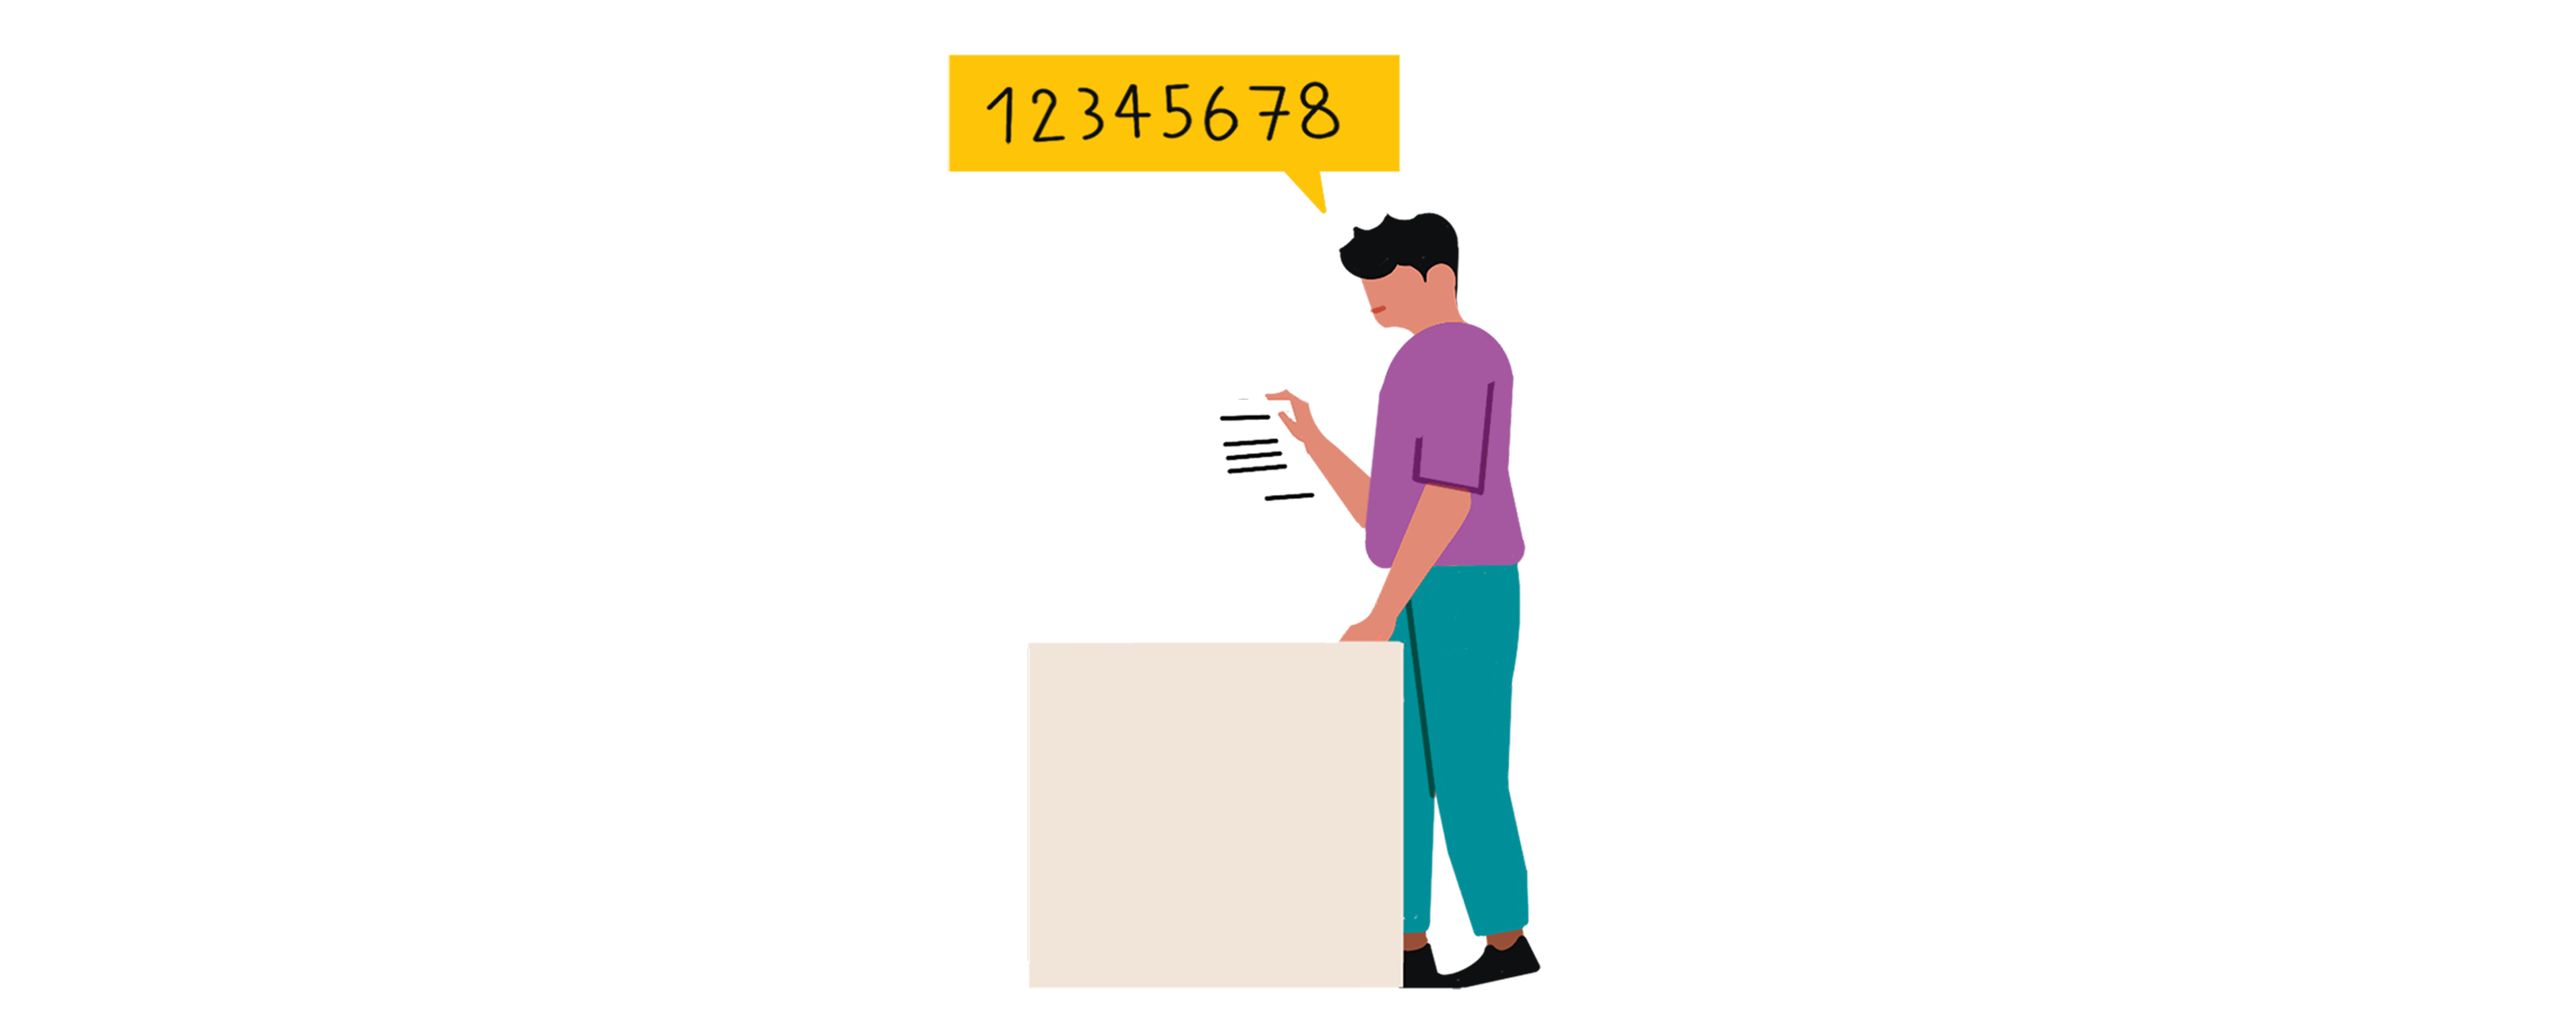 Infographie désignant un citoyen au bureau de vote. Il donne le numéro national d'électeur qui permet d'identifier un électeur.